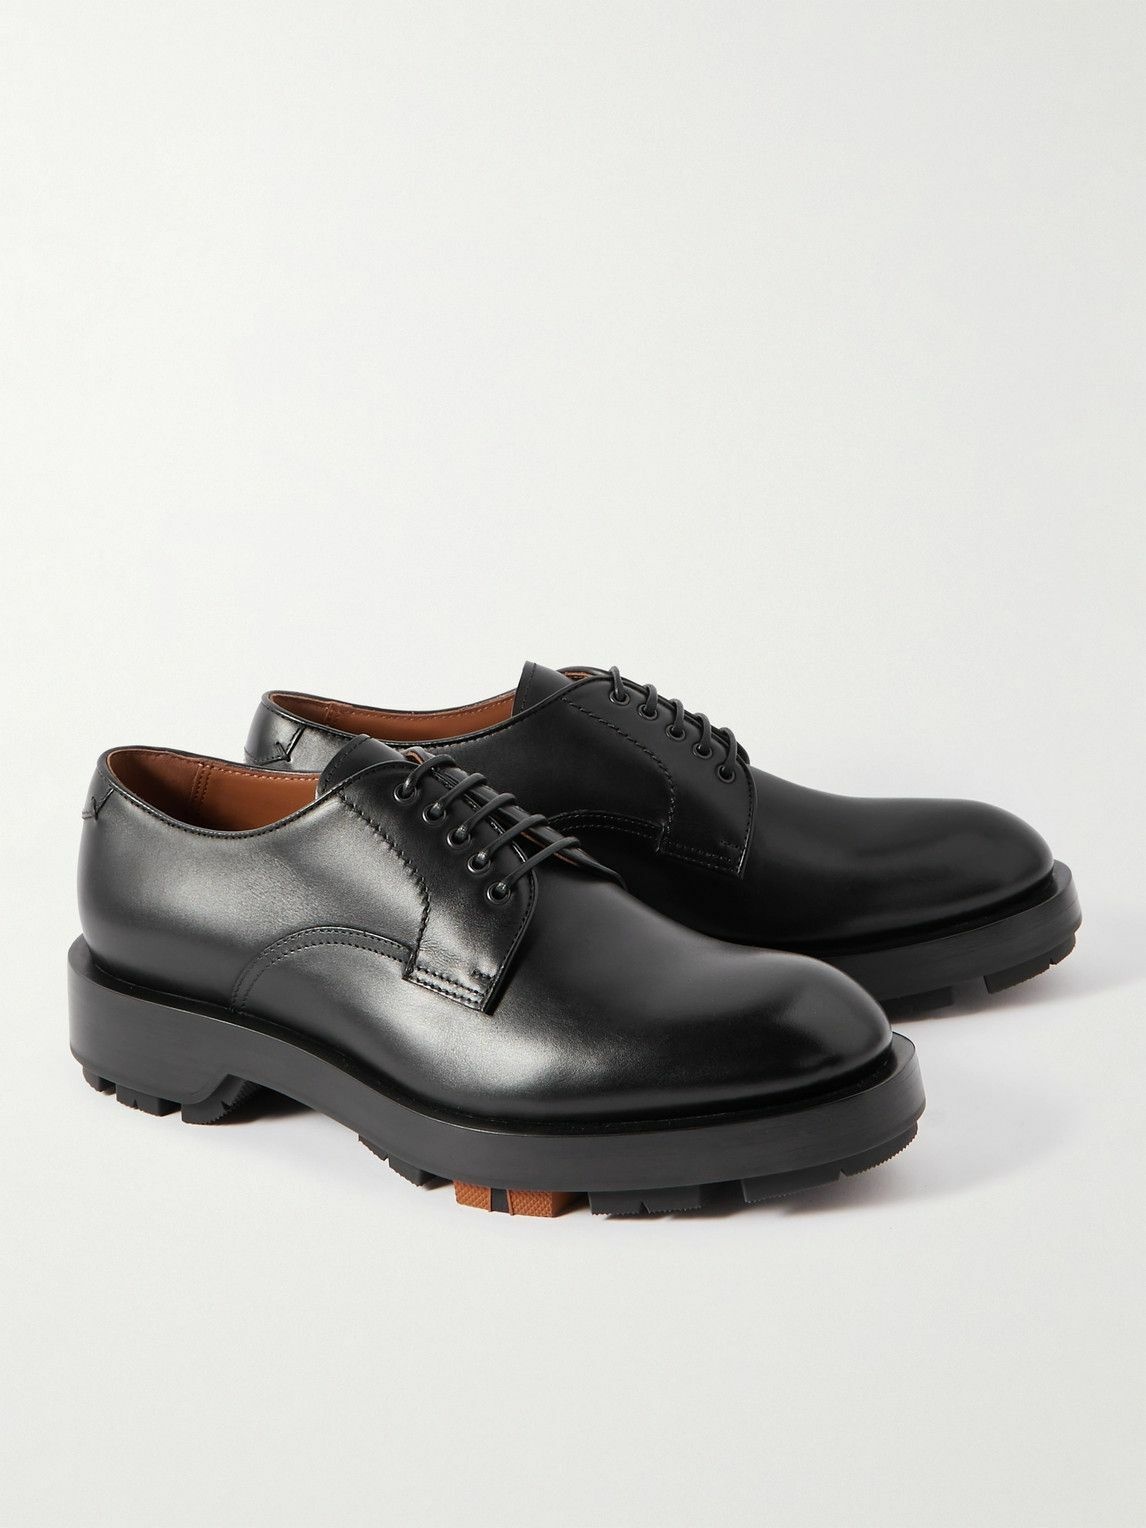 Zegna - Udine Leather Derby Shoes - Black Zegna